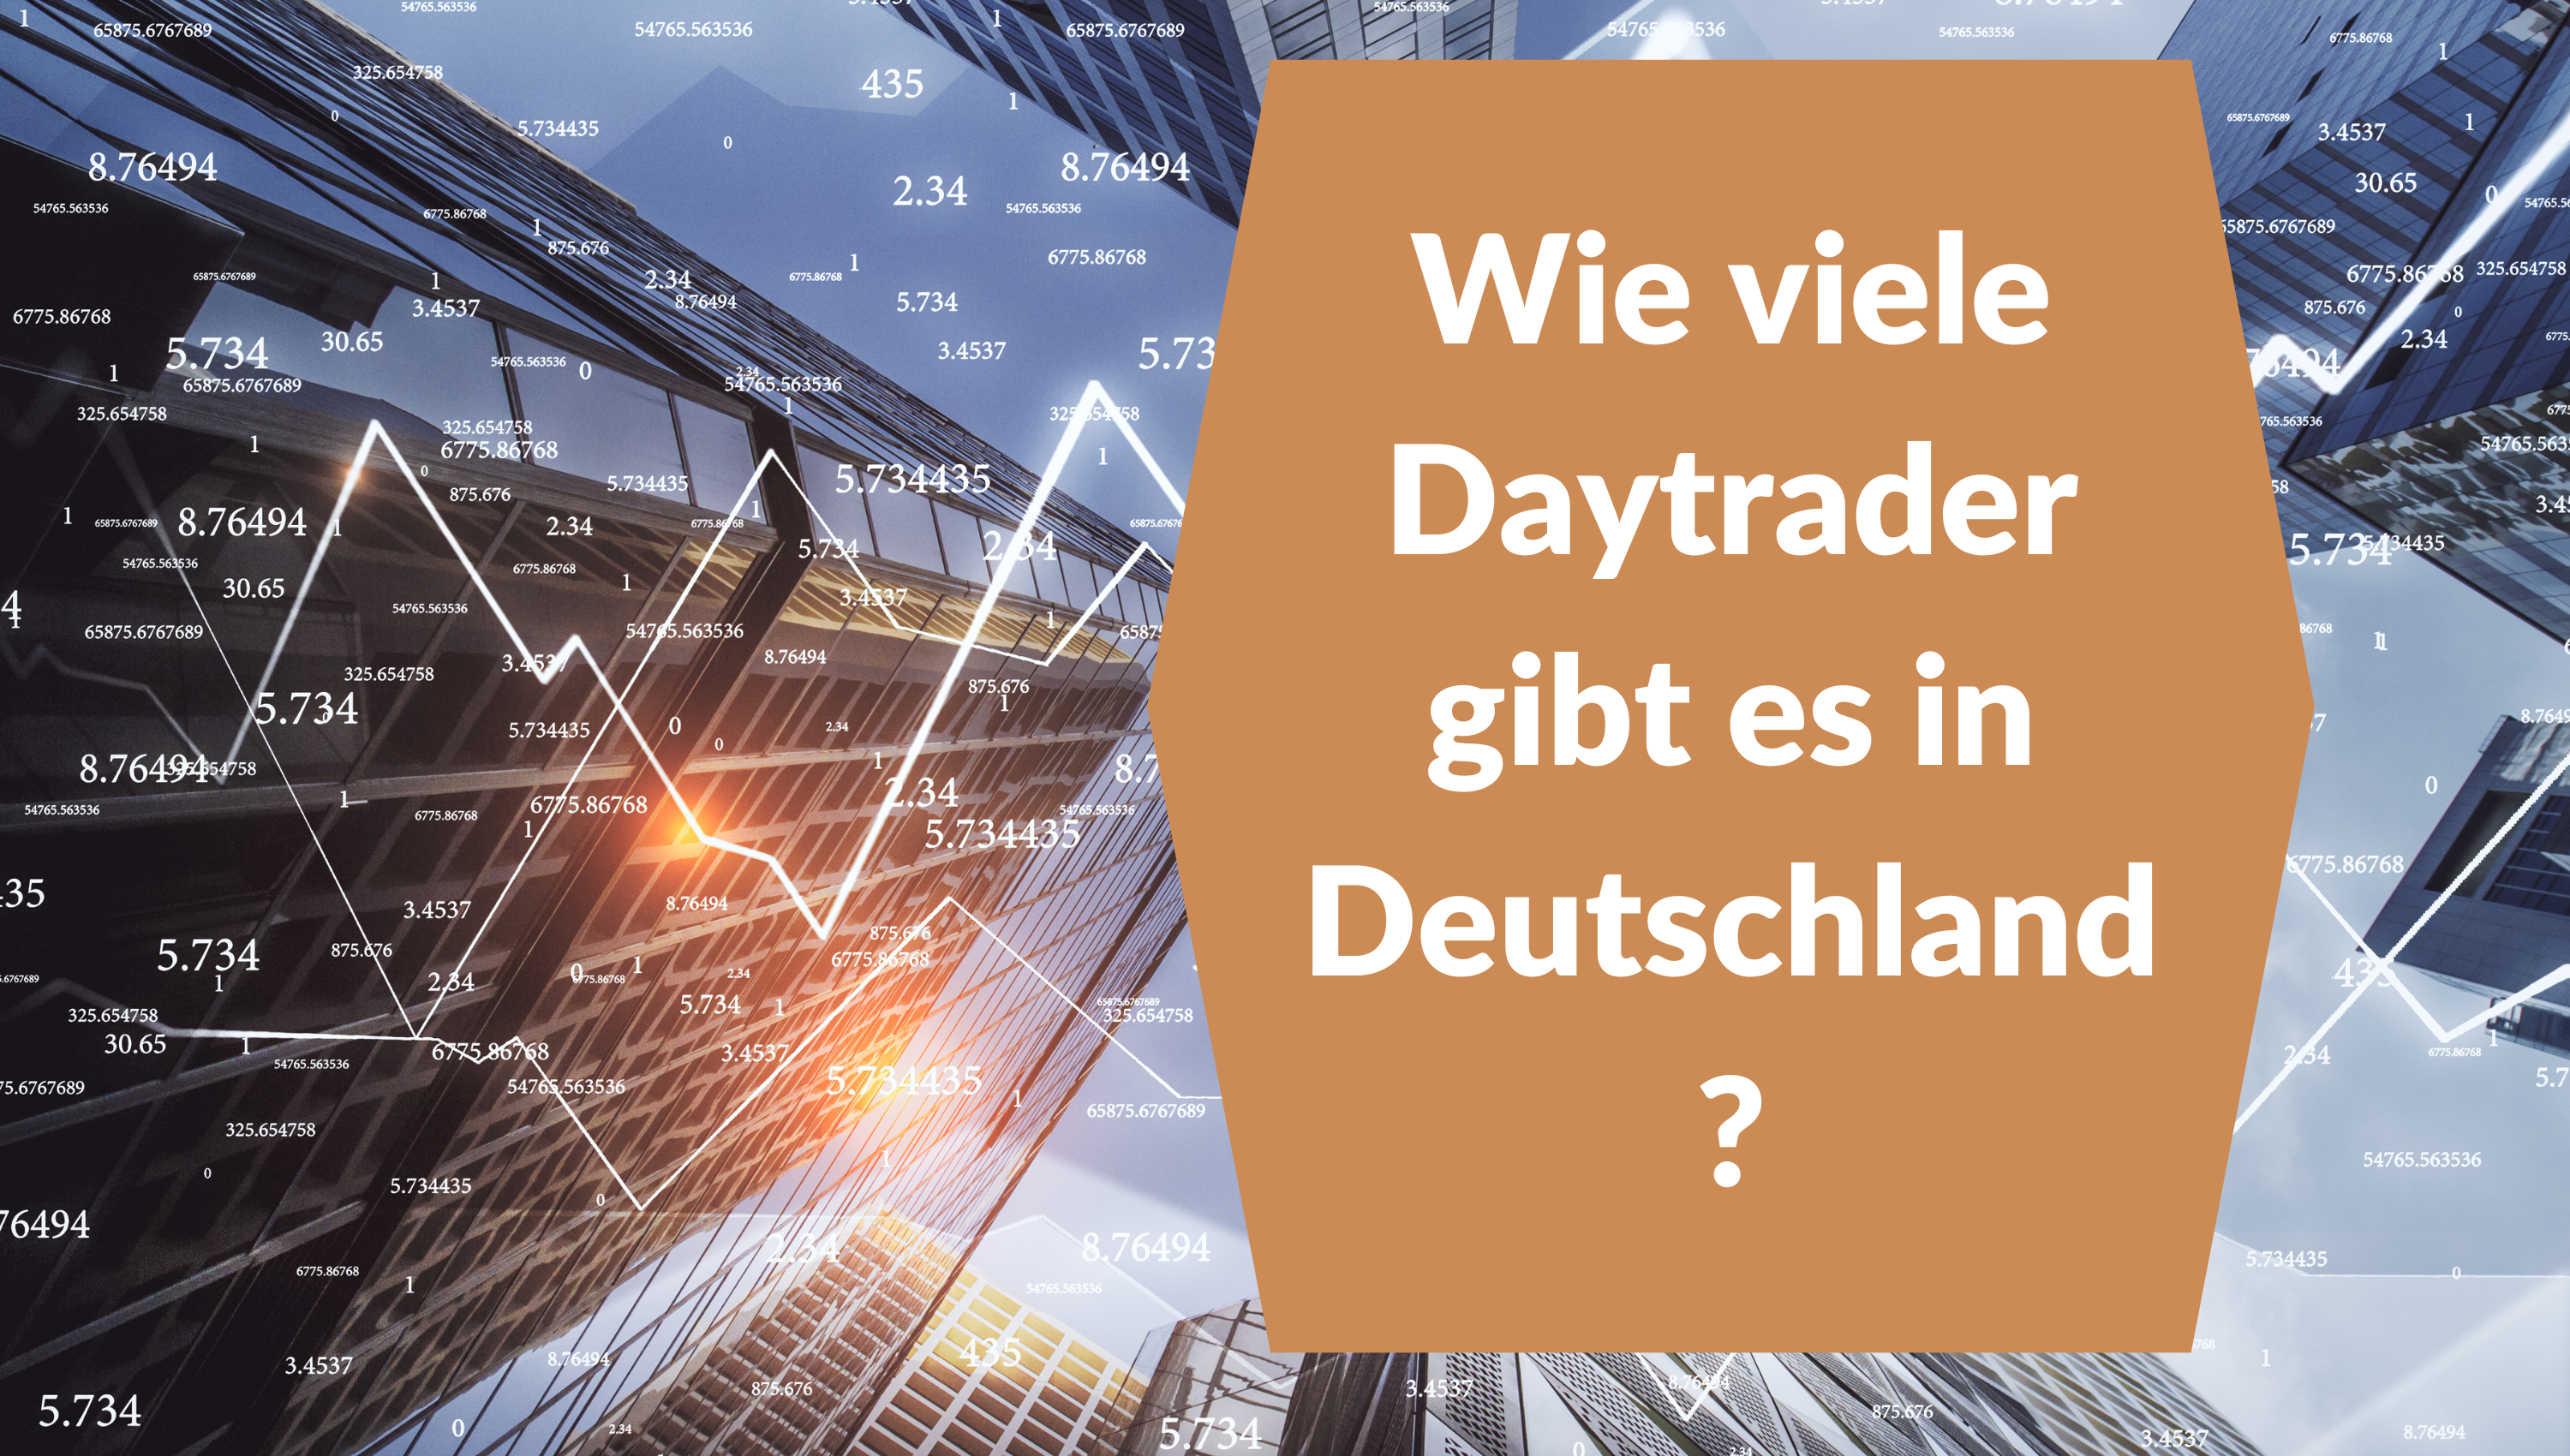 Wie viele Daytrader gibt es in Deutschland?